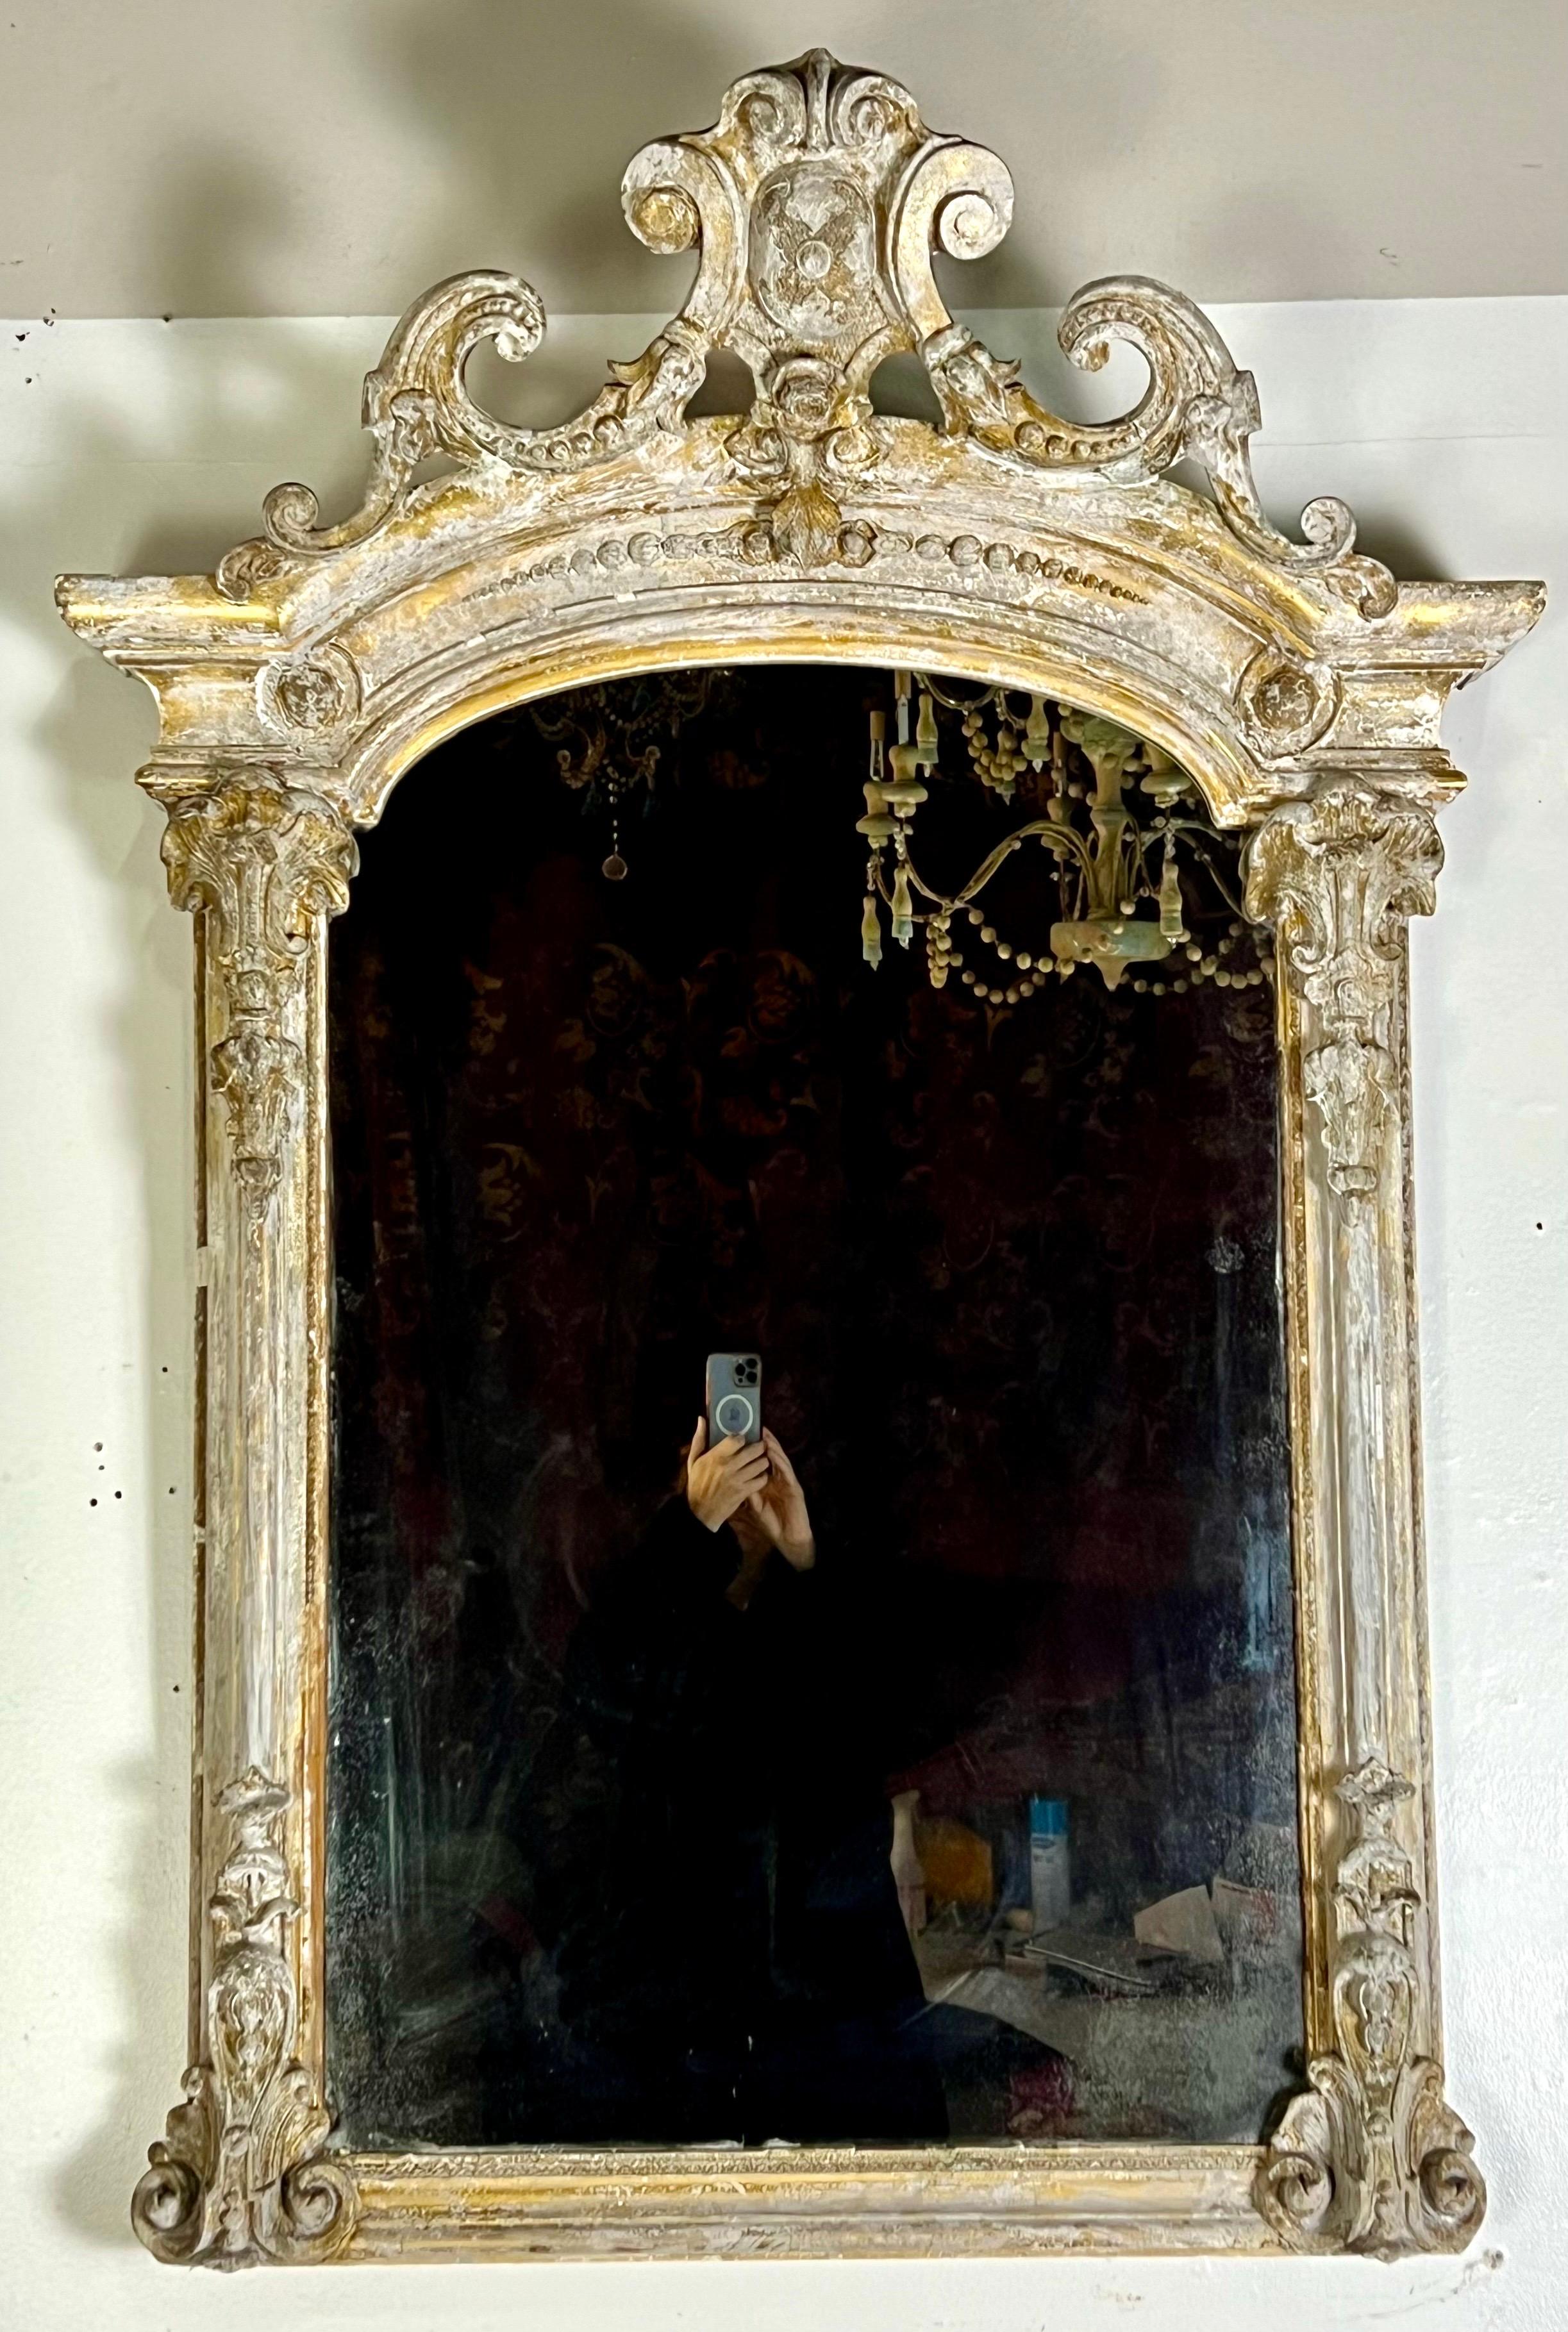 Miroir orné de style rococo français du 19e siècle, peint et doré parcellaire, caractérisé par ses rinceaux élaborés et ses motifs floraux. La finition peinte est vieillie et il y a des restes de feuilles d'or dans tout le cadre.